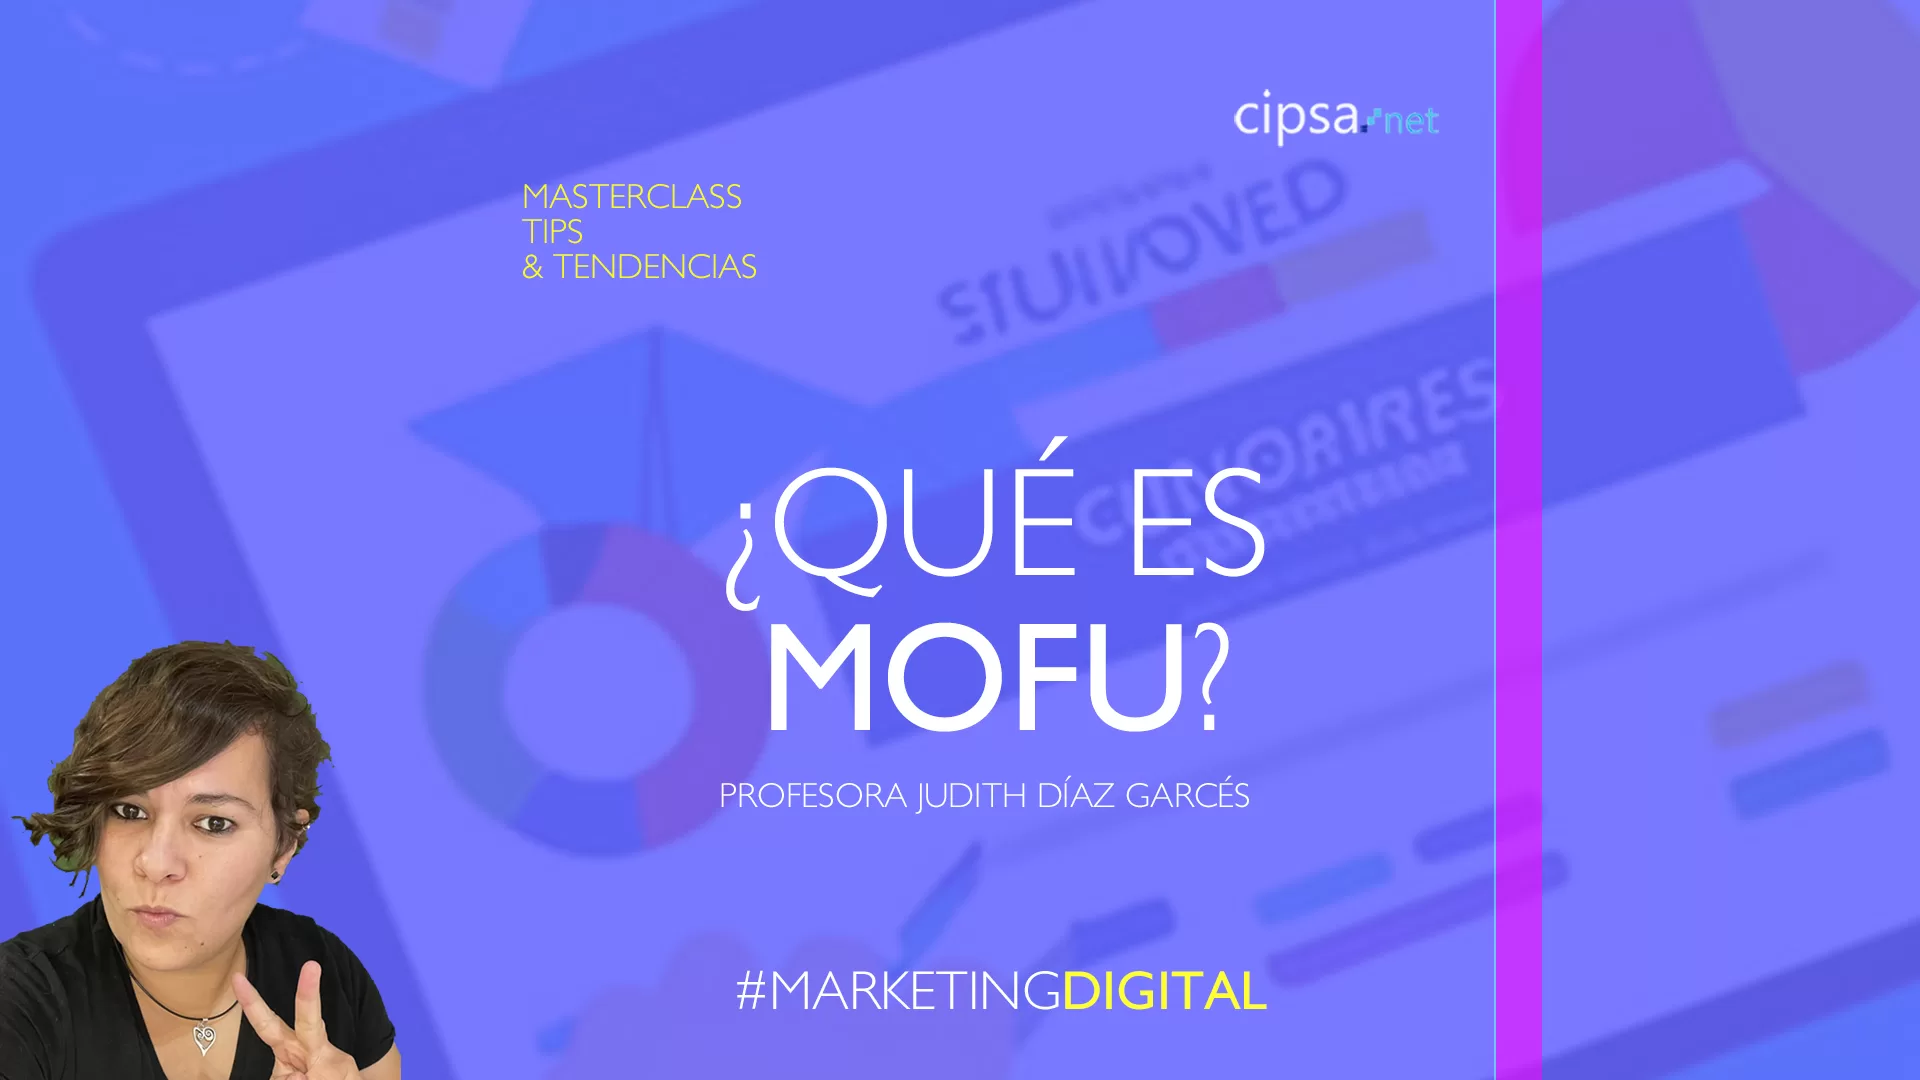 Directo Masterclass Marketing Digital 18h YouTube CIPSA especial ¿Qué es Mofu? convertir visitas en clientes, ejemplos, tips, casos de éxito actual.